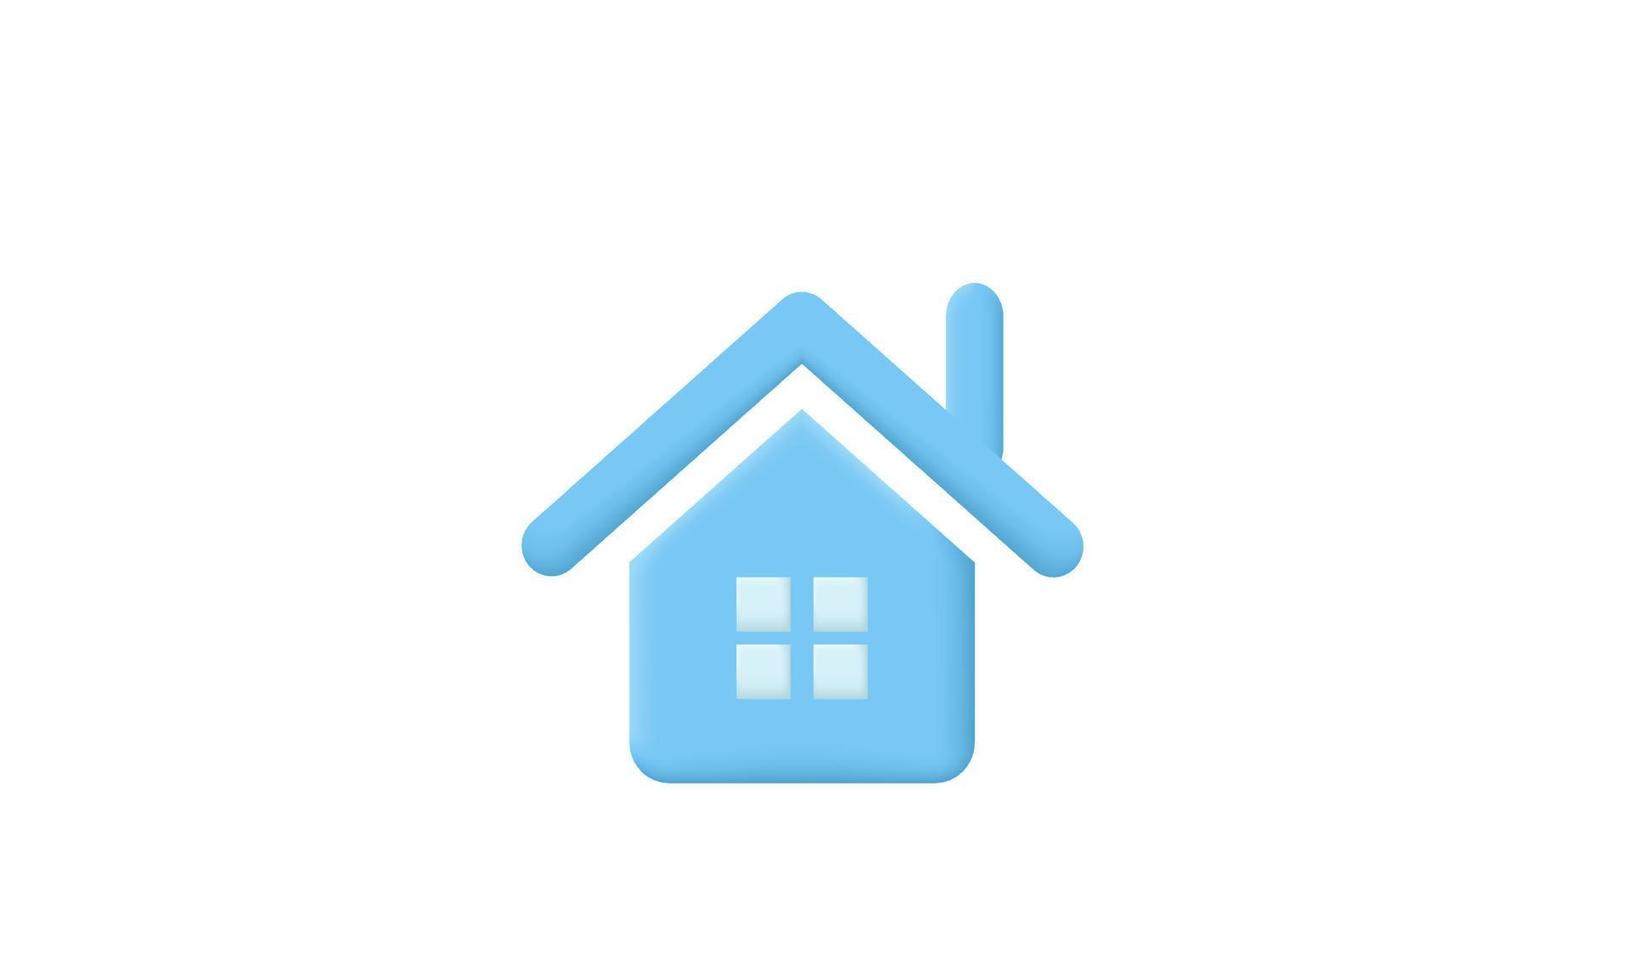 Hypothèque immobilière de symbole de maison minimale réaliste 3d vecteur